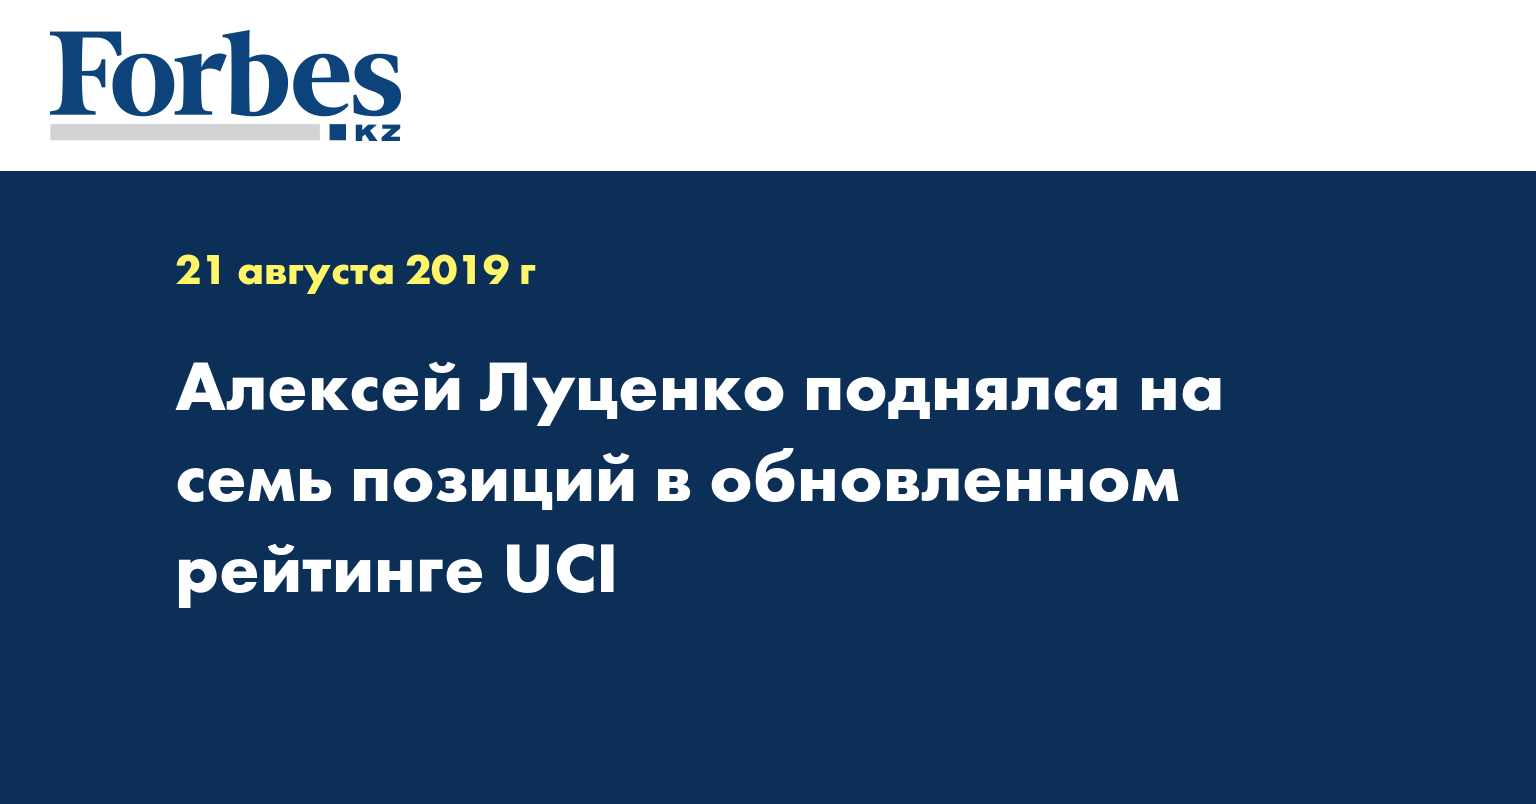 Алексей Луценко поднялся на семь позиций в обновленном рейтинге UCI